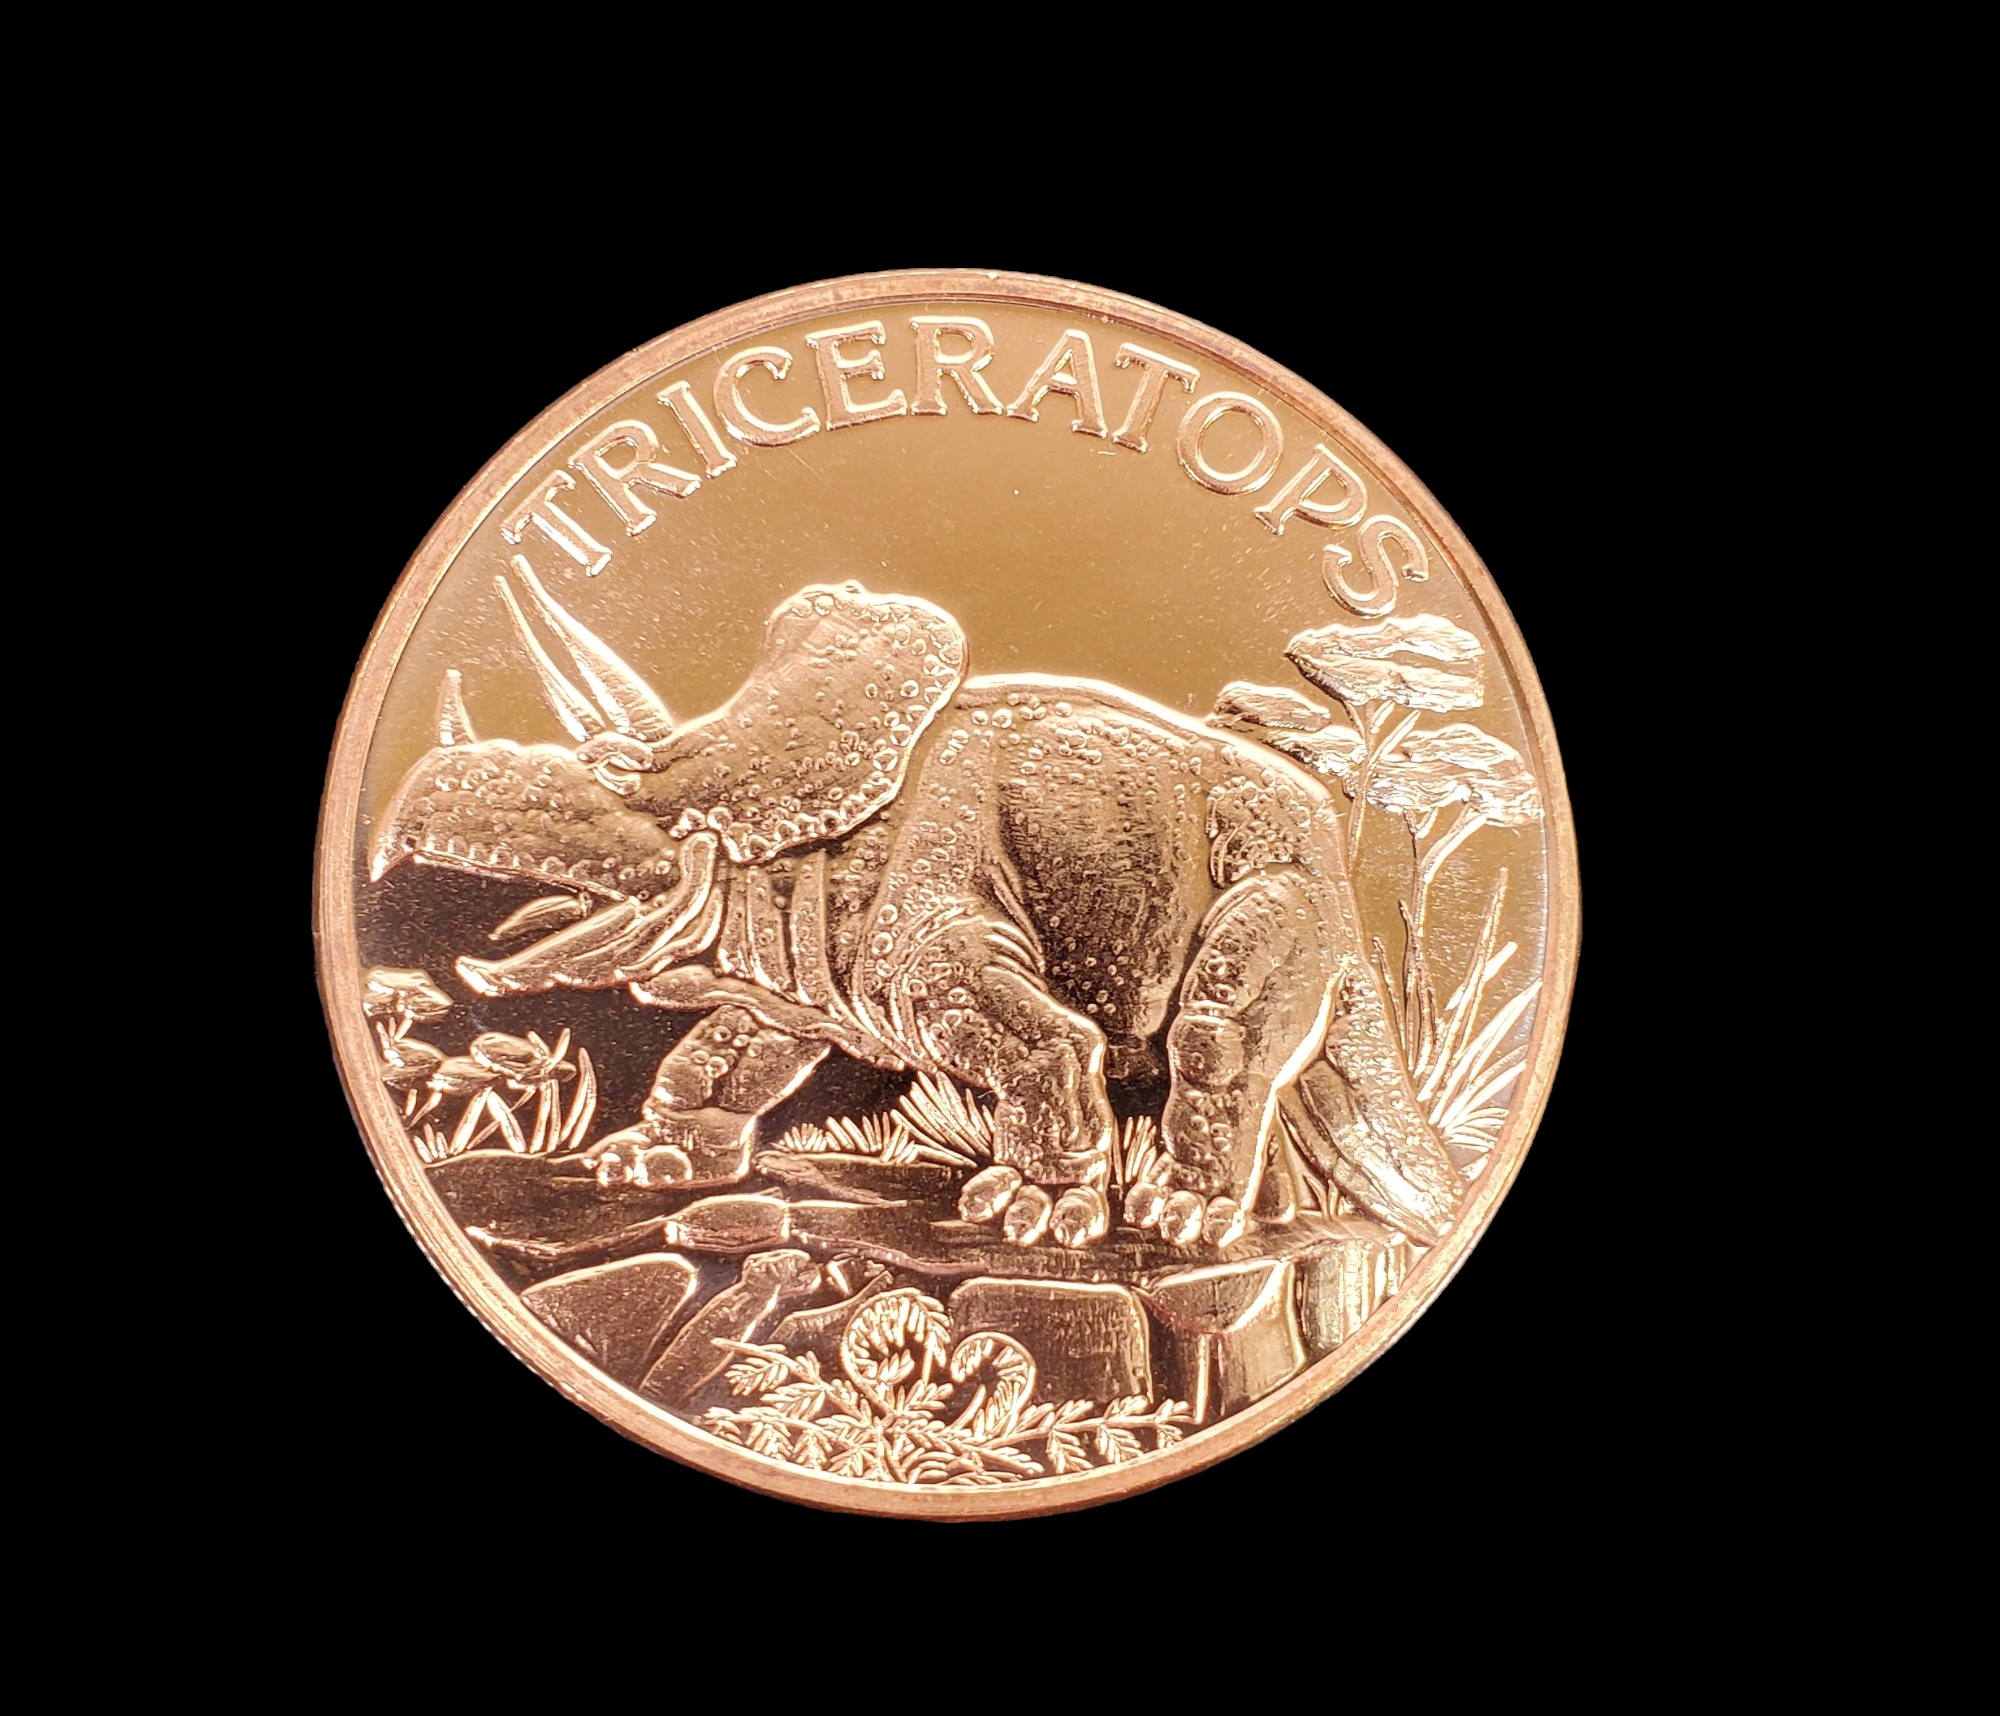 1 Oz Copper Coin (Triceratops), Michigan